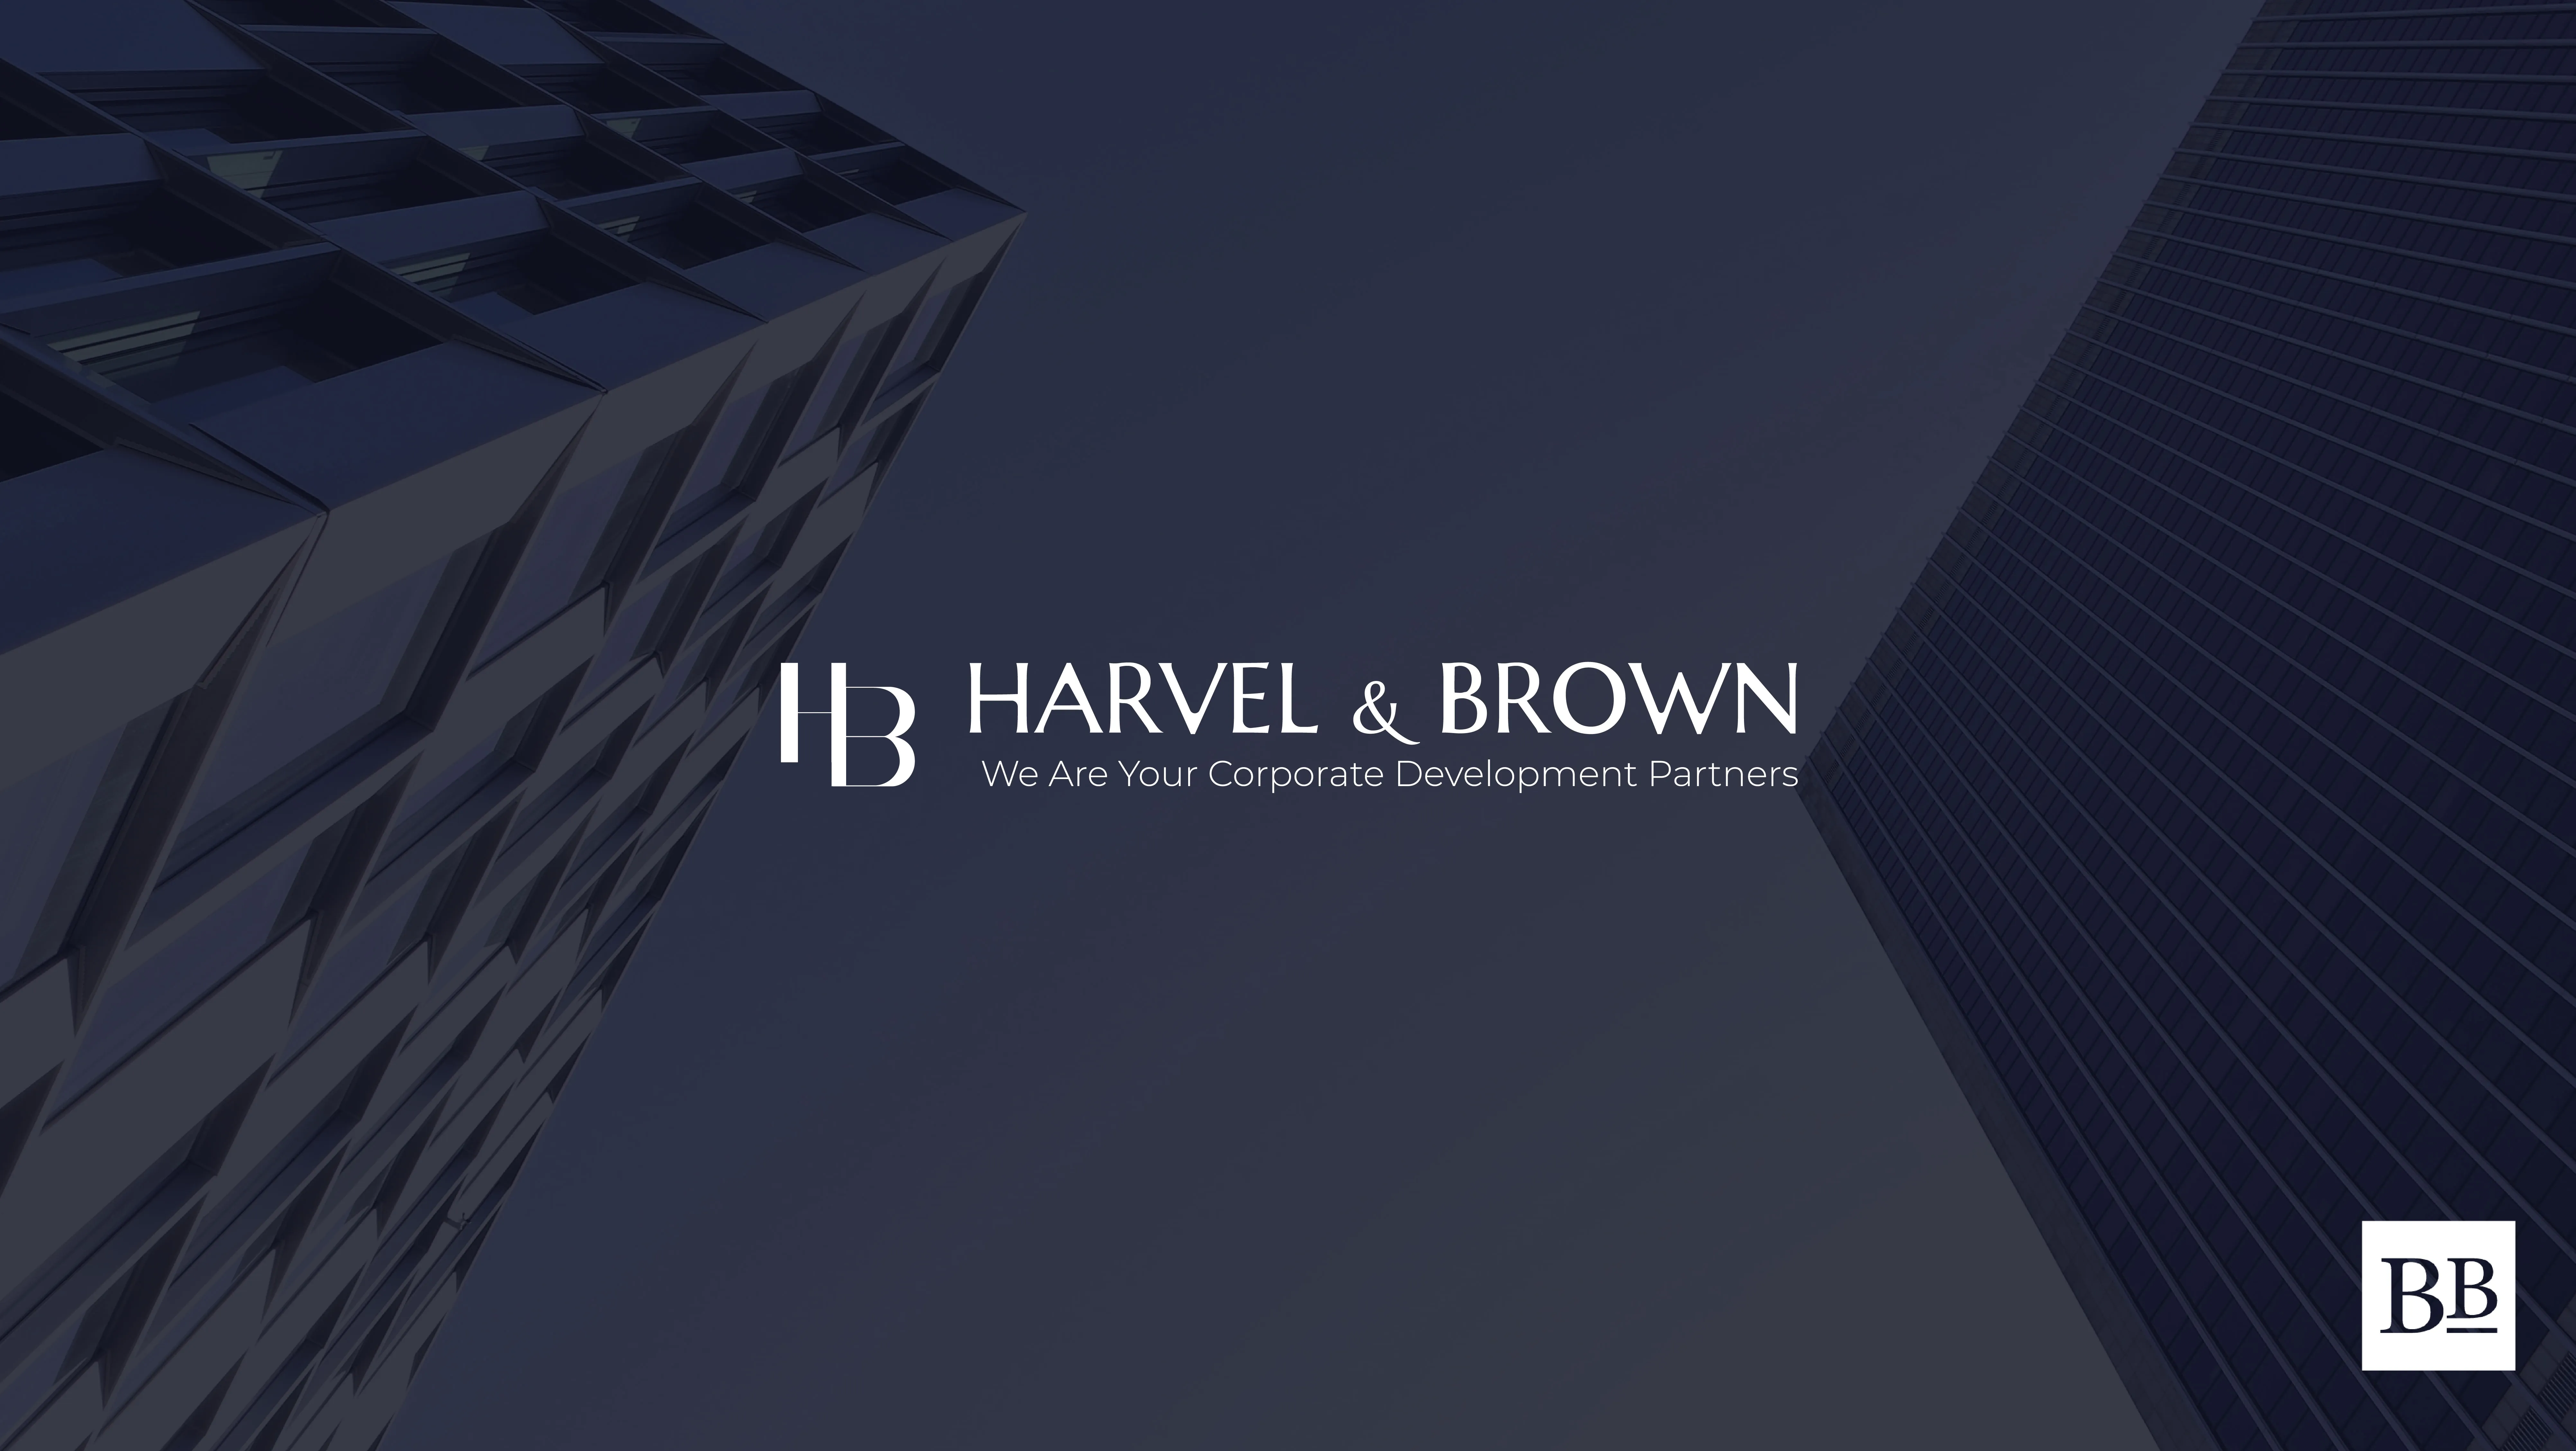 Projet de Branding, charte graphique - Harvel&Brown, branding Tunisie